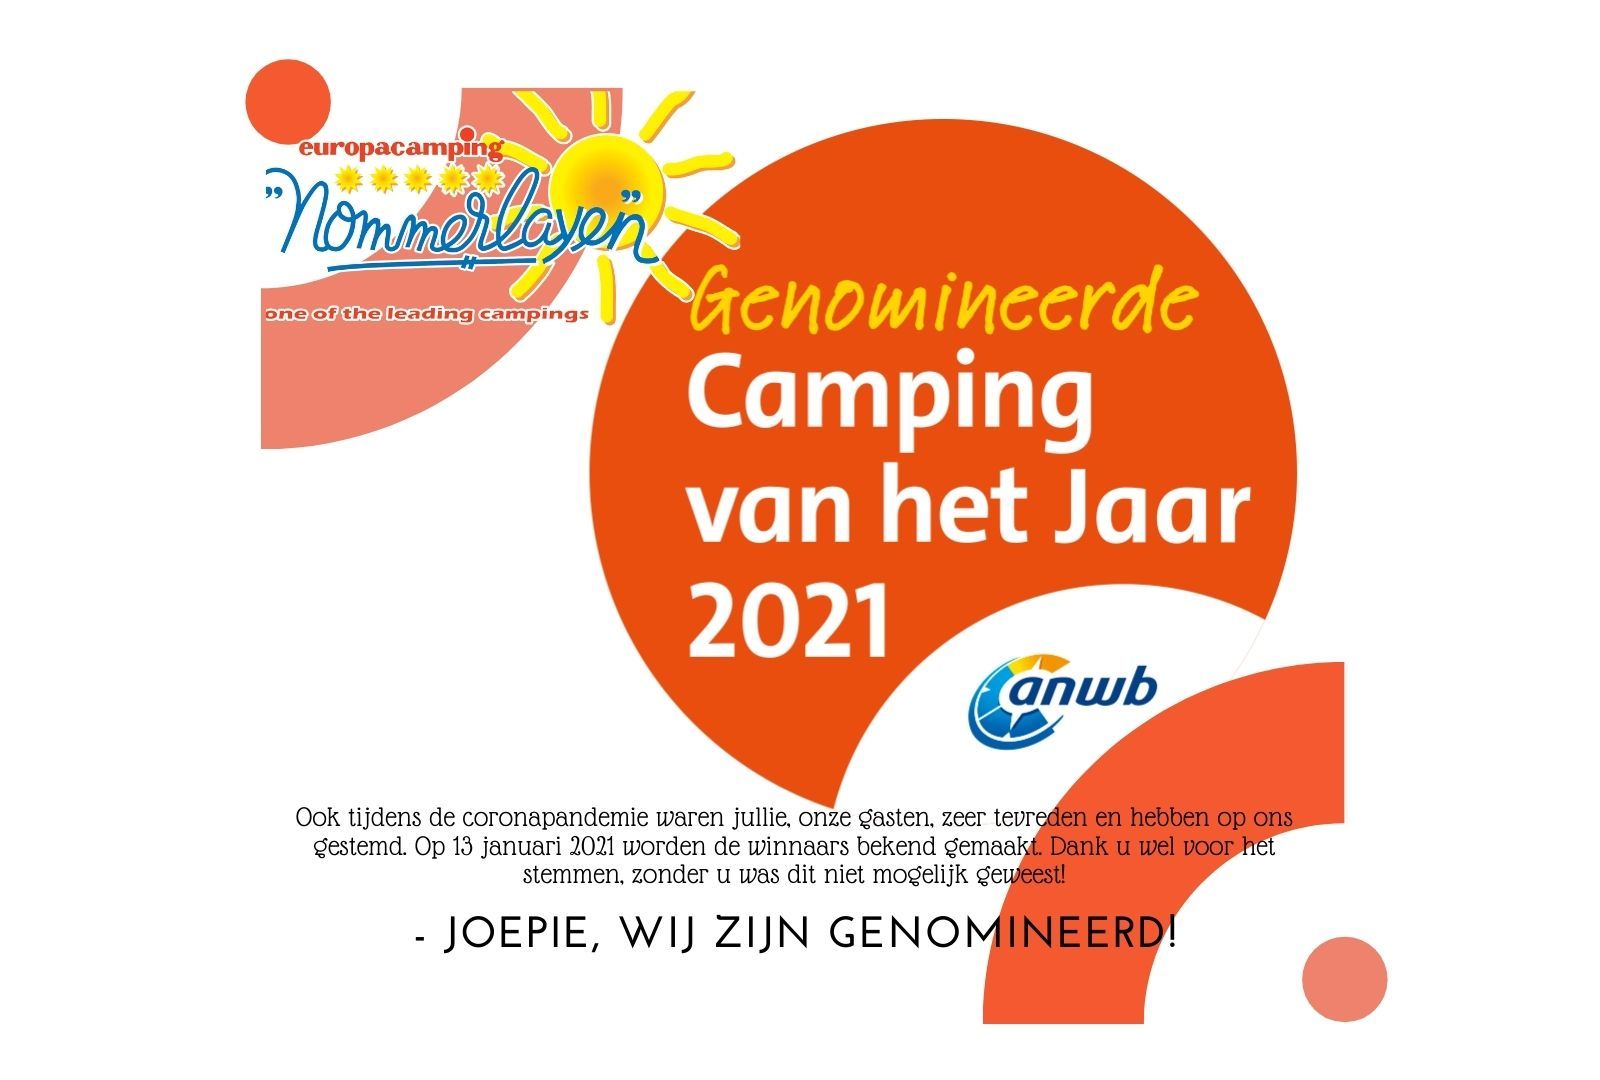 Camping Van Het Jaar 2021 Anwb Camping Van Het Jaar Europacamping Nommerlayen